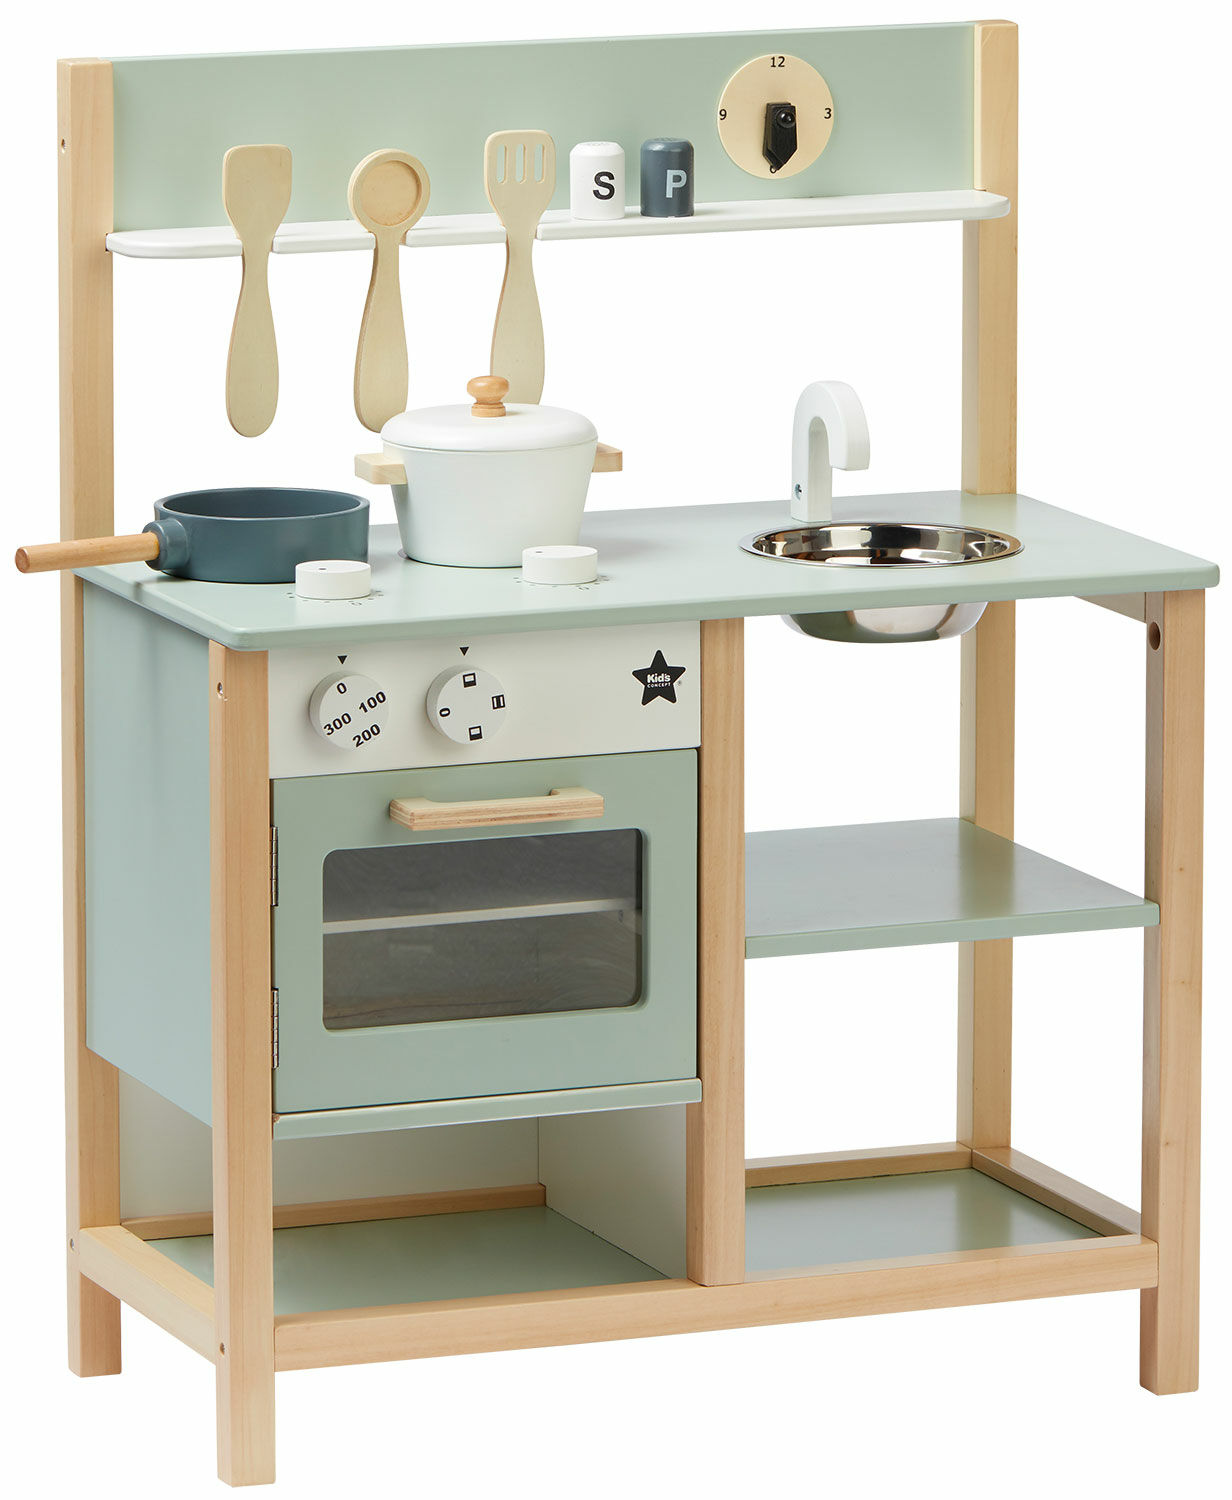 Holzspielzeug-Set "Küche Bistro mintgrün" (für Kinder ab 3 Jahren) von Kid's Concept